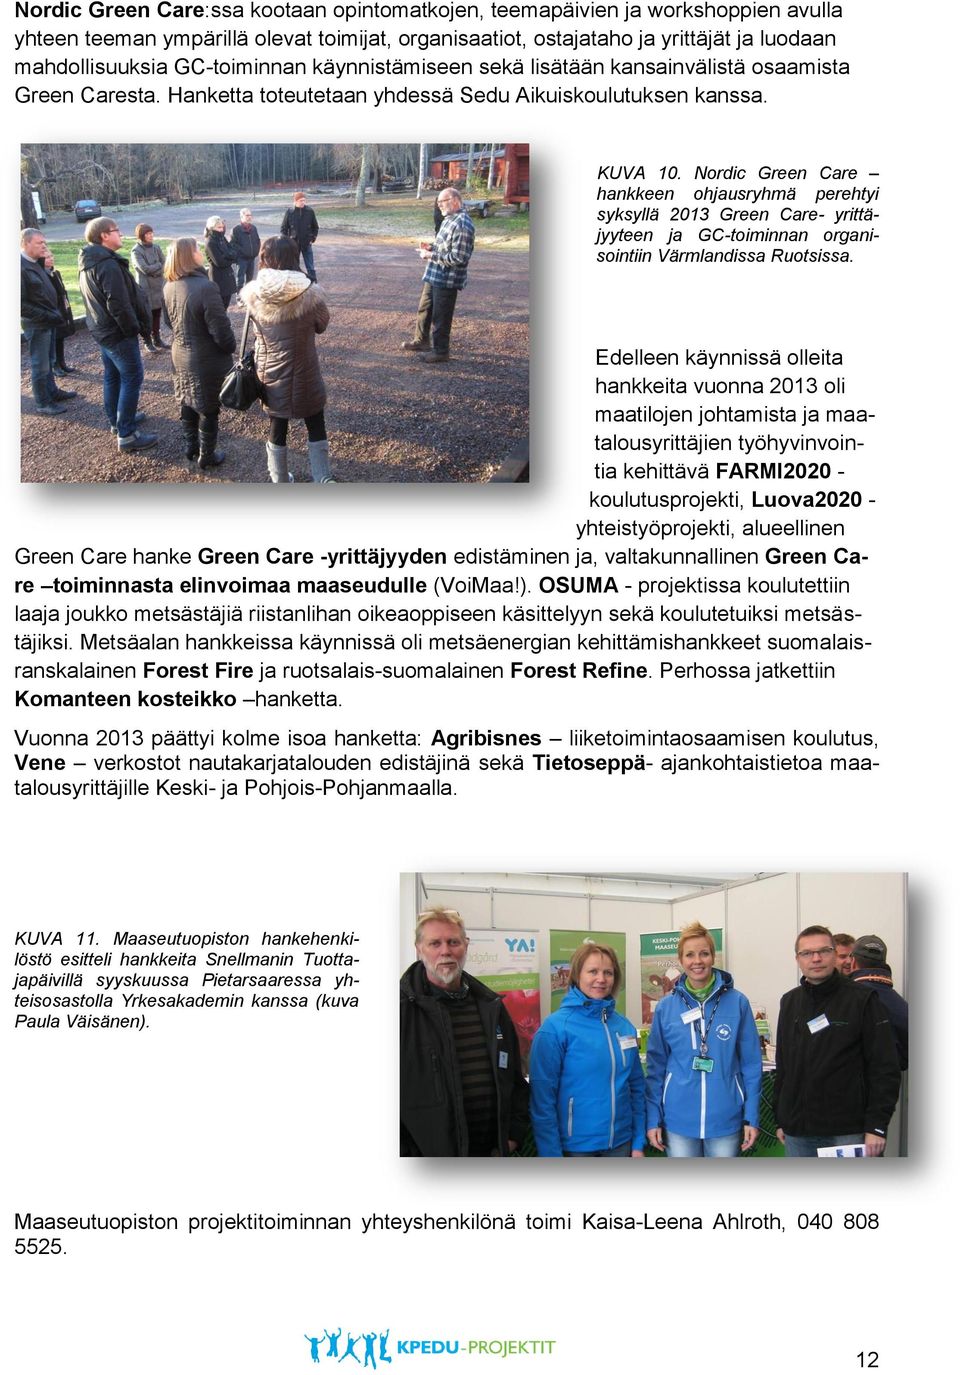 Nordic Green Care hankkeen ohjausryhmä perehtyi syksyllä 2013 Green Care- yrittäjyyteen ja GC-toiminnan organisointiin Värmlandissa Ruotsissa.